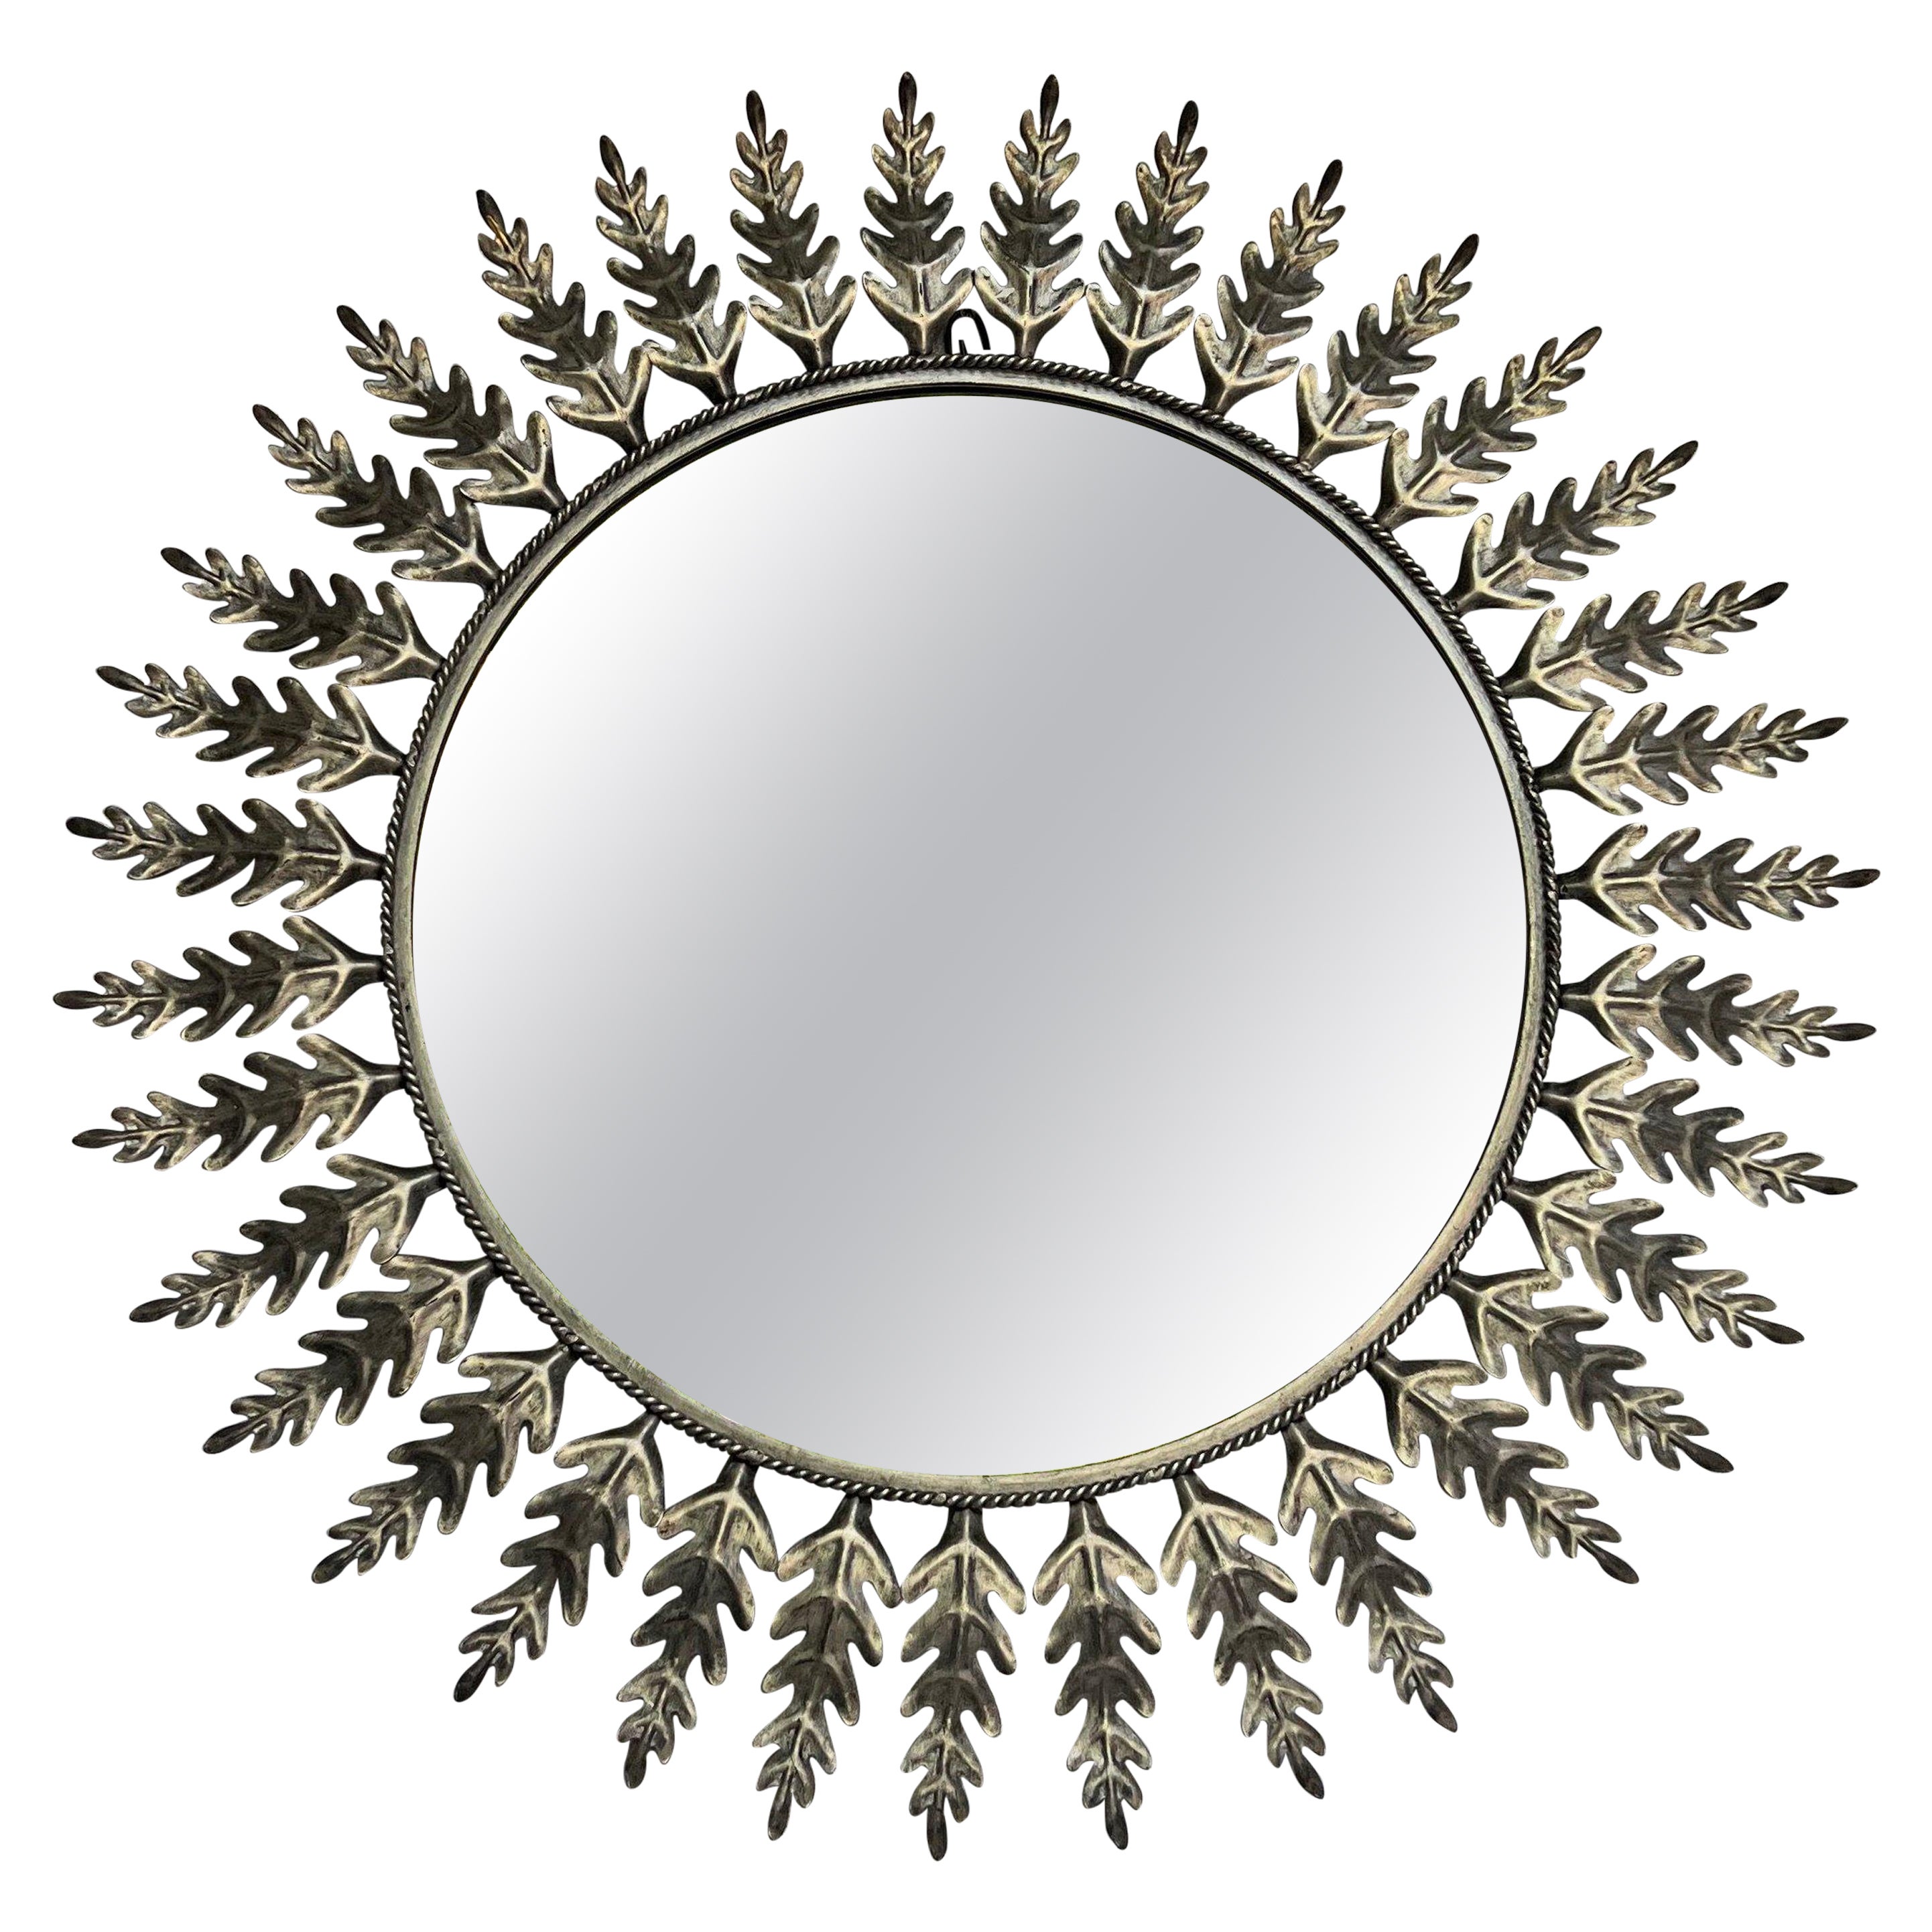 Spanish Round Silvered Metal Sunburst Mirror For Sale